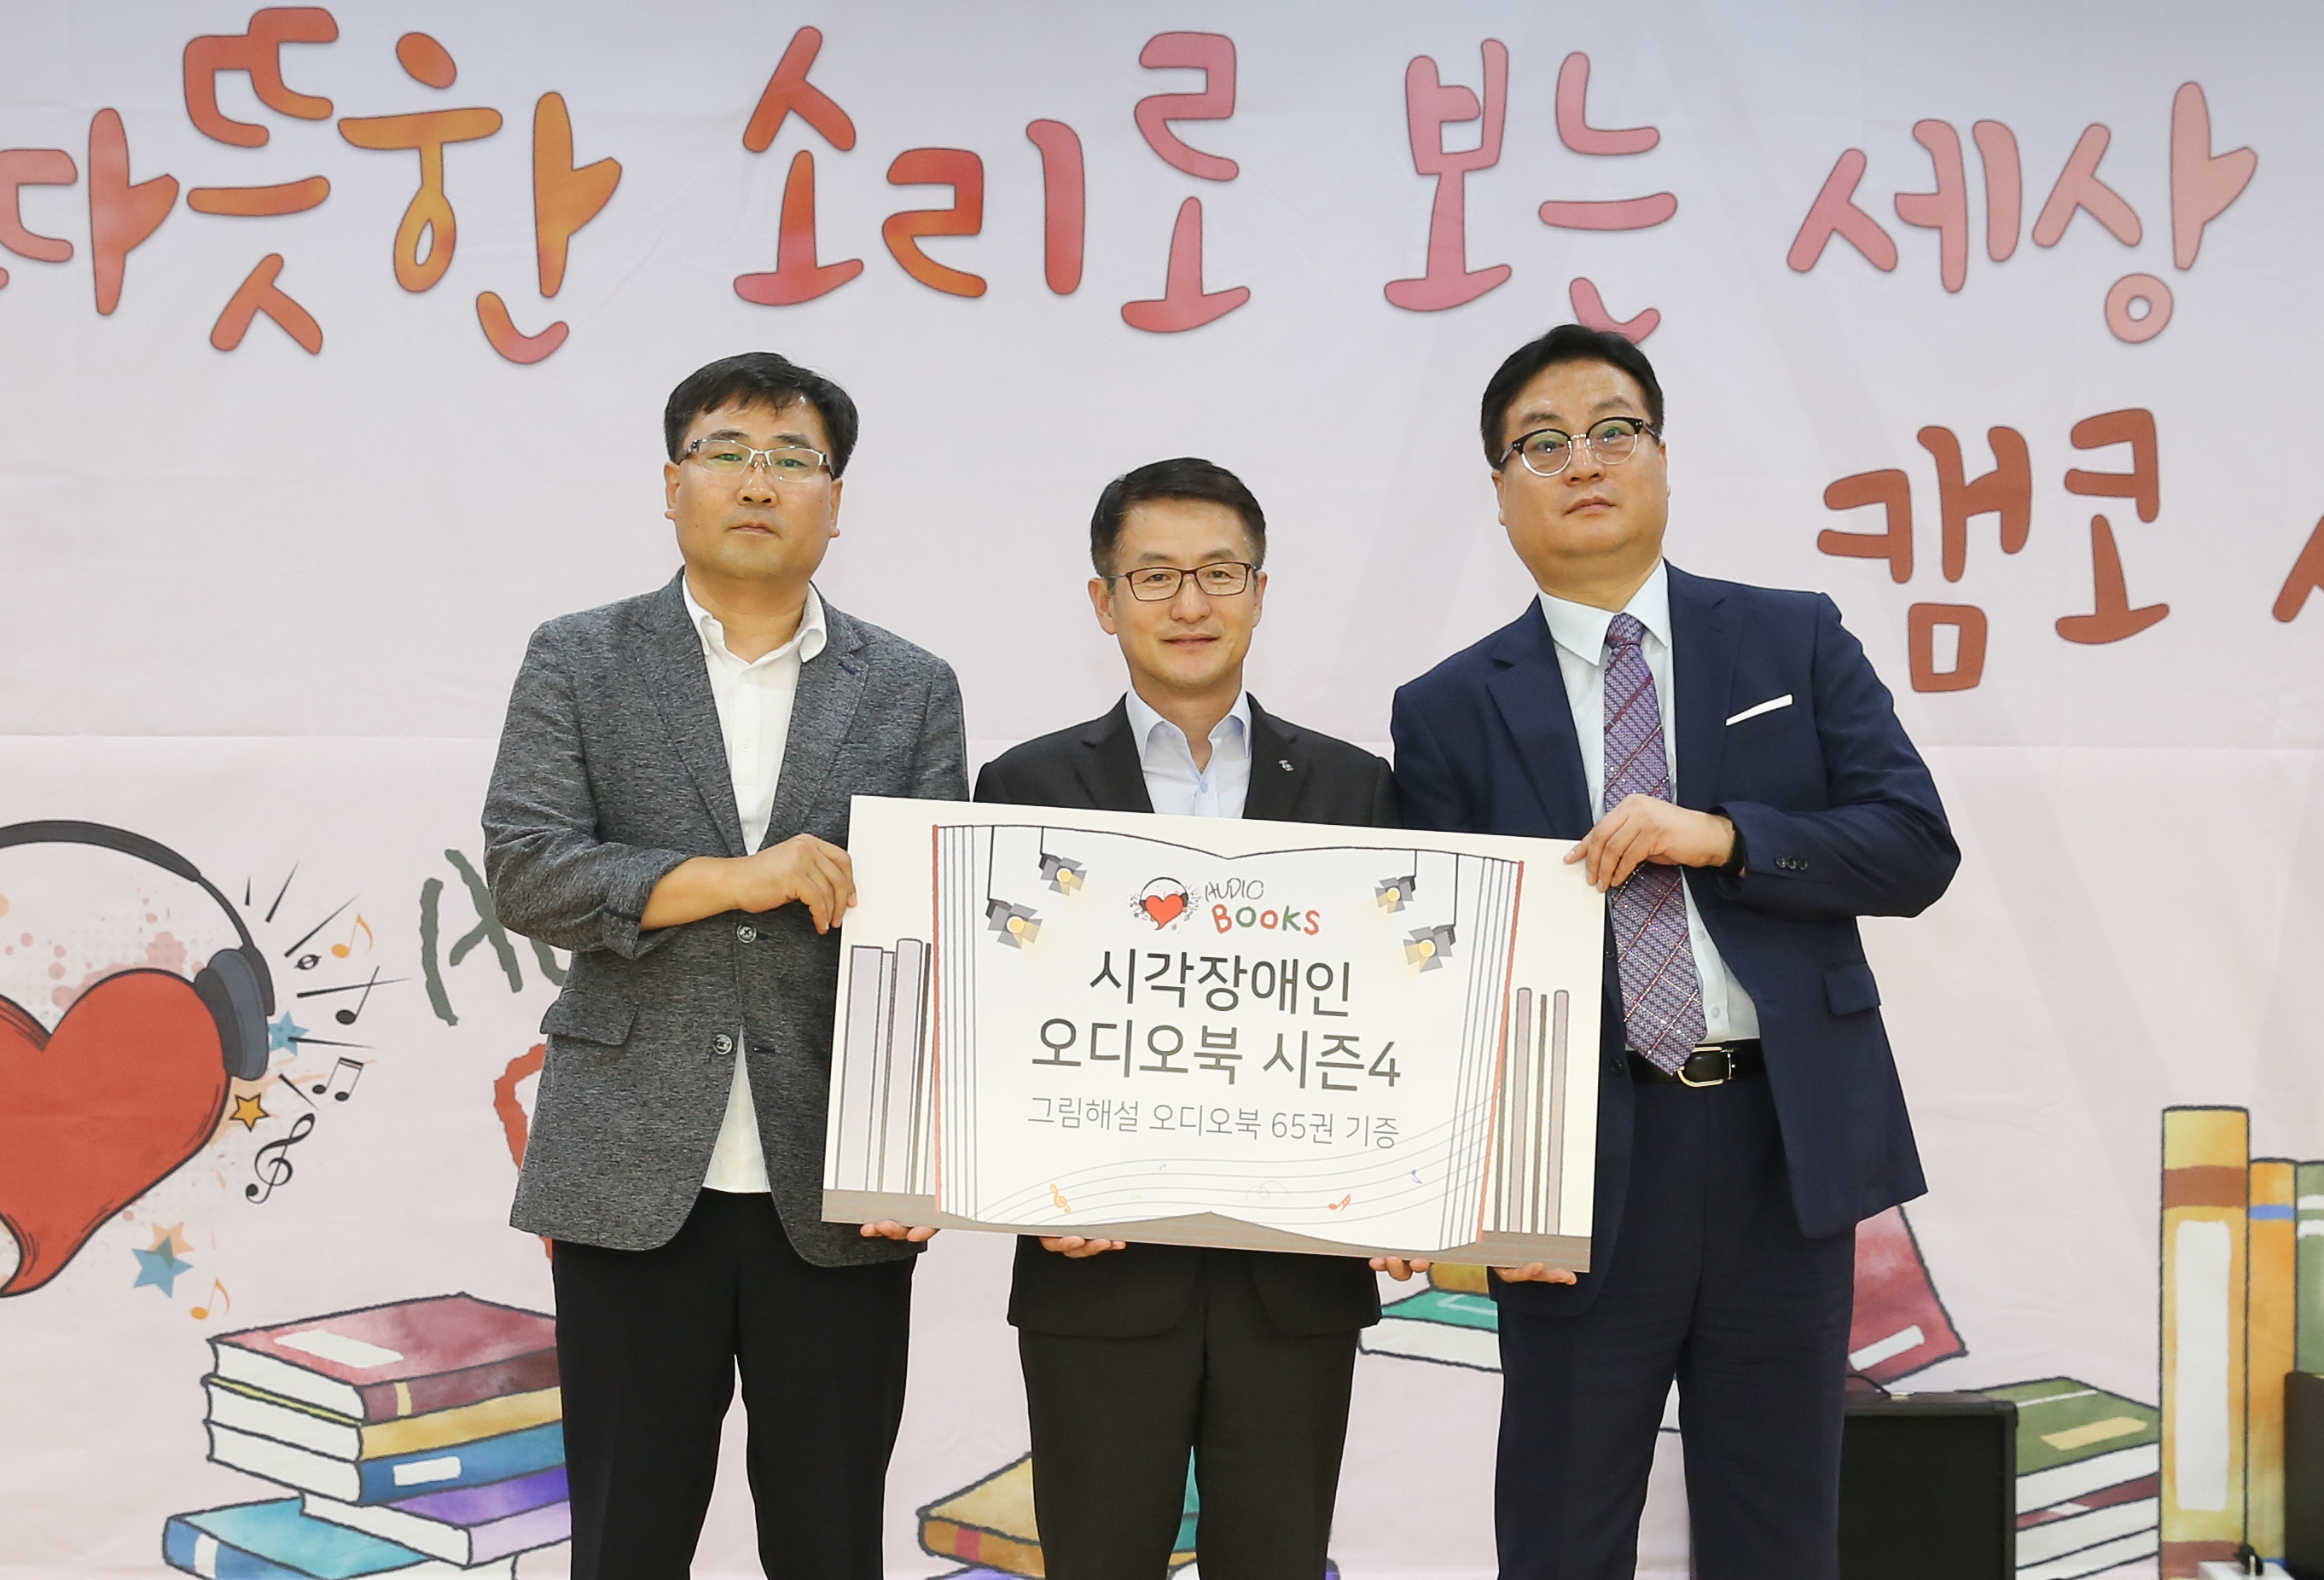 2018 한국자산관리공사 그림해설 오디오북 출판기념회1